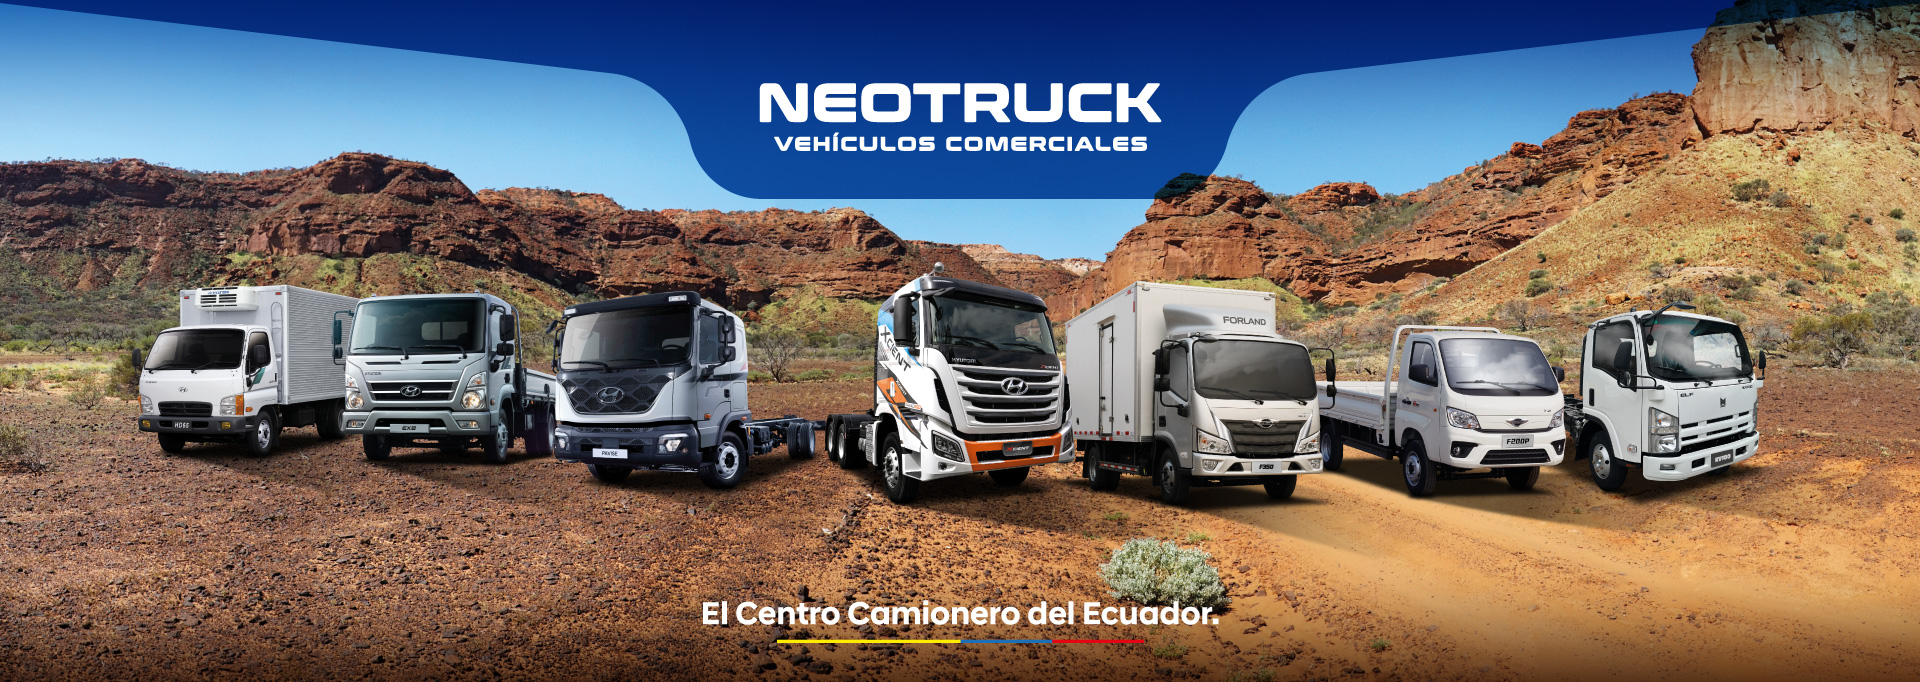 Neotruck - centro camionero #1 del Ecuador